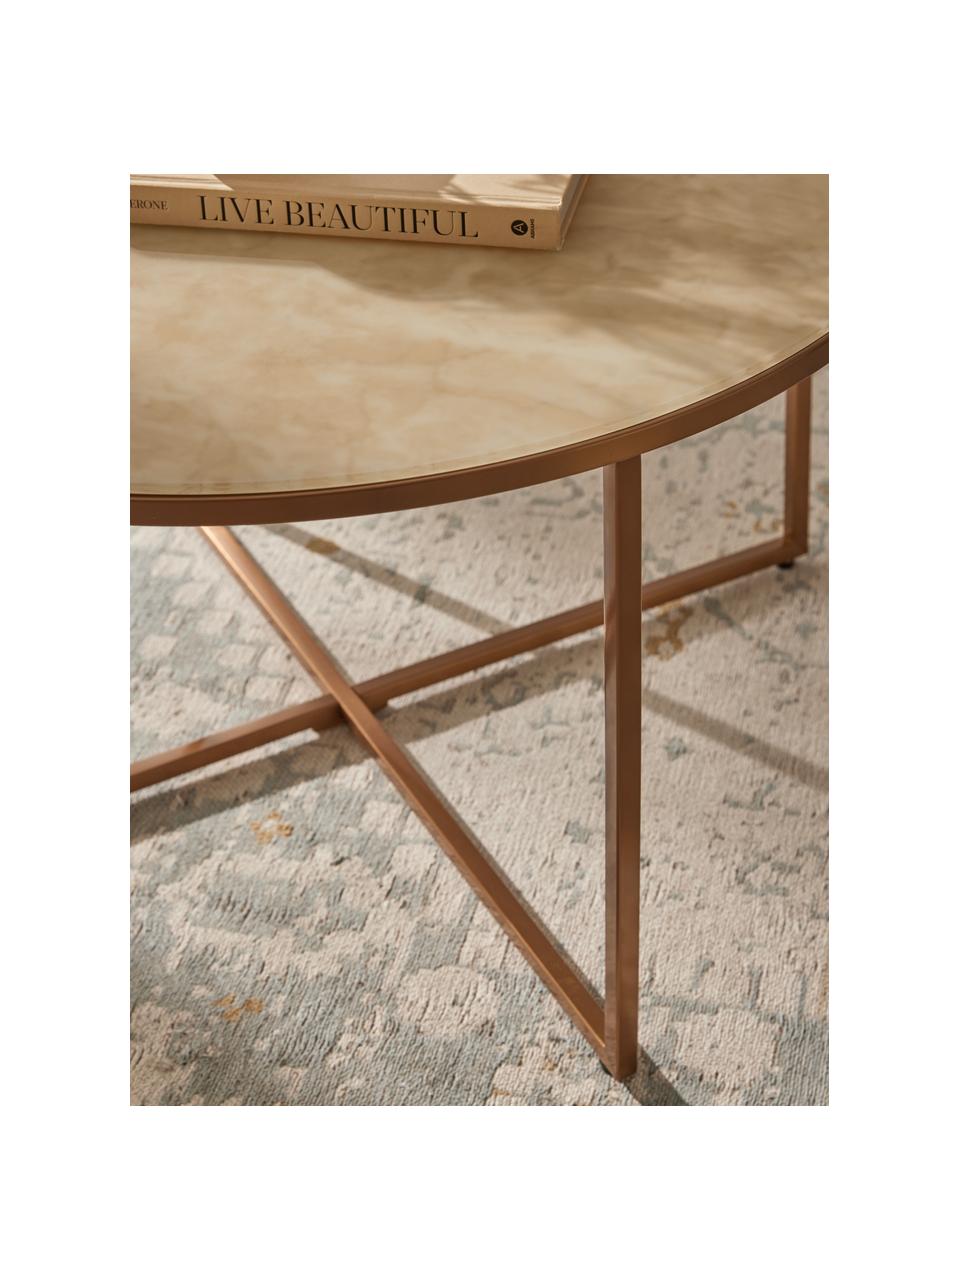 Okrągły stolik kawowy ze szklanym blatem Antigua, Blat: szkło, matowy nadruk, Stelaż: metal mosiądzowany, Beżowy, o wyglądzie marmuru, odcienie mosiądzu, matowy, Ø 80 cm